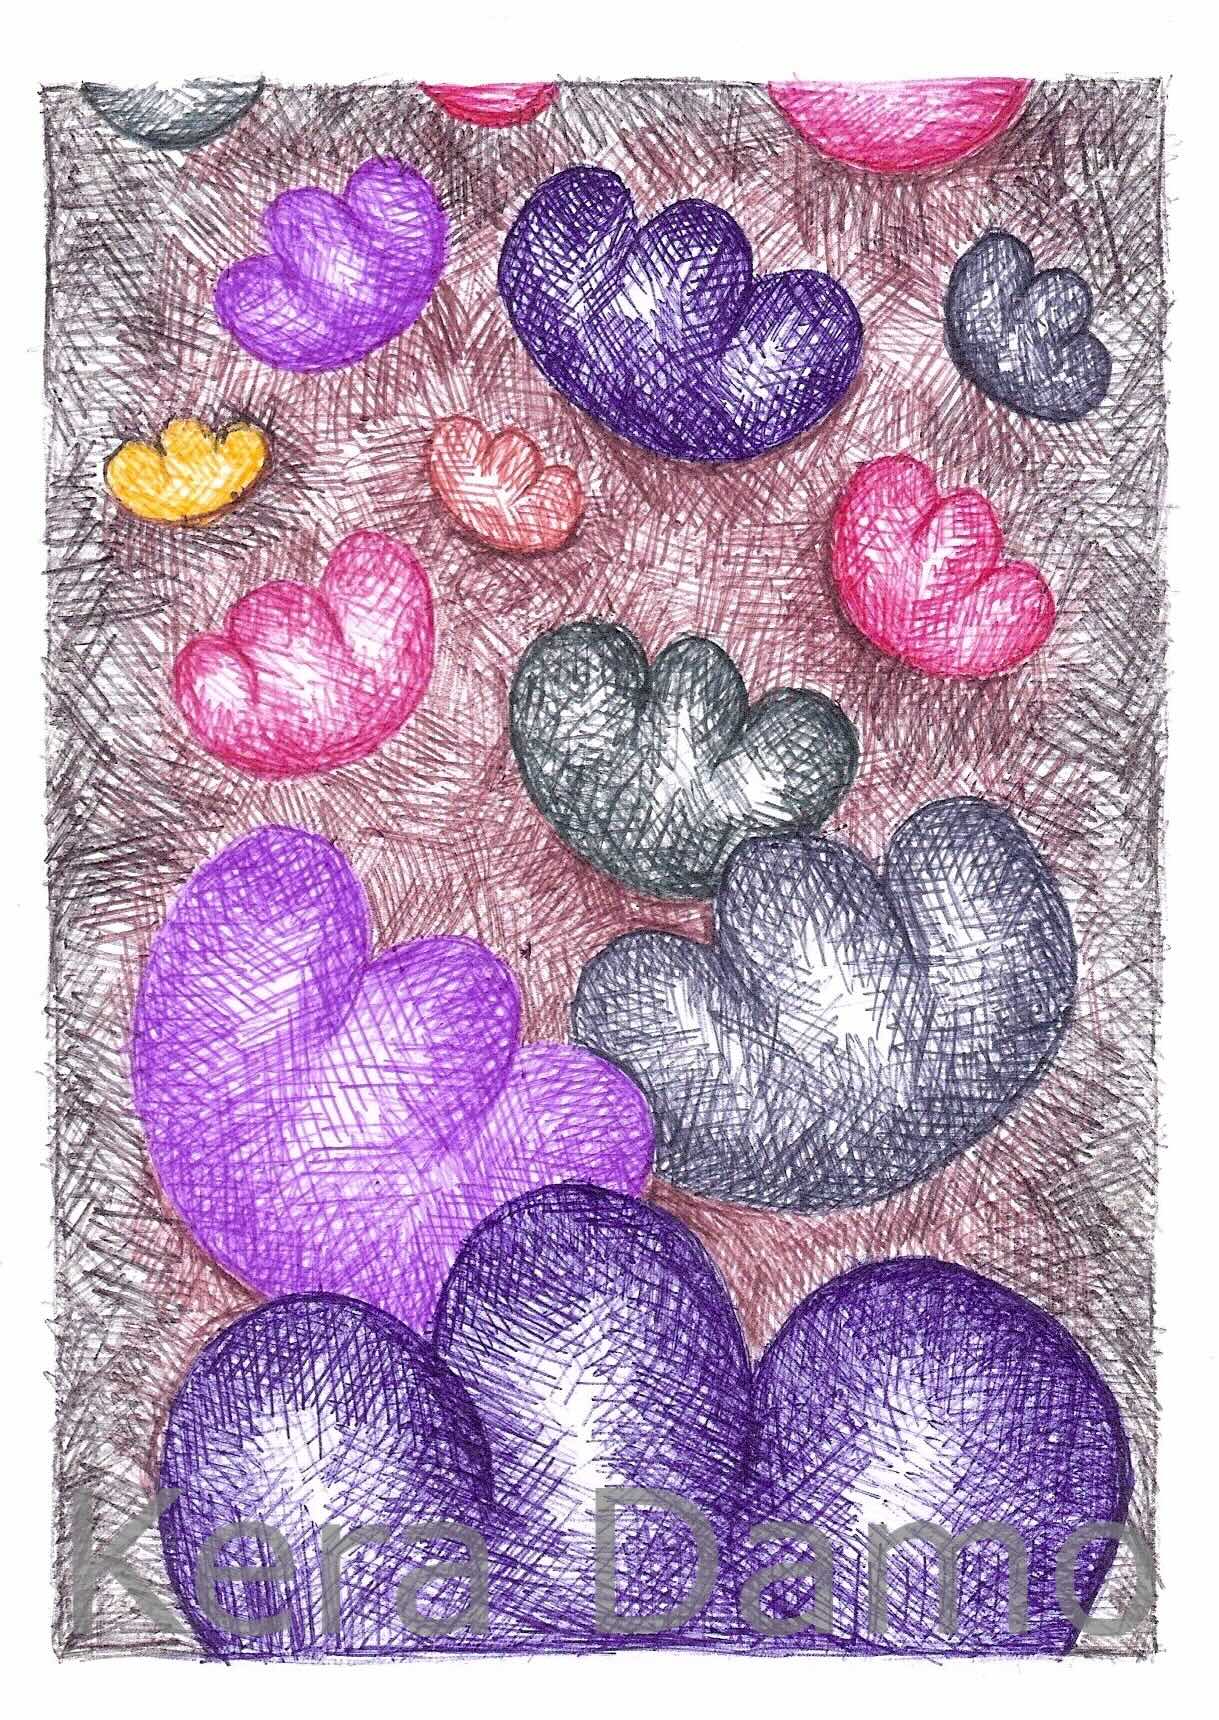 A multicoloured pen drawing made by visual artist Kera Damo from the Hague / Een meerkleurige pentekening van beeldend kunstenaar Kera Damo uit Den Haag